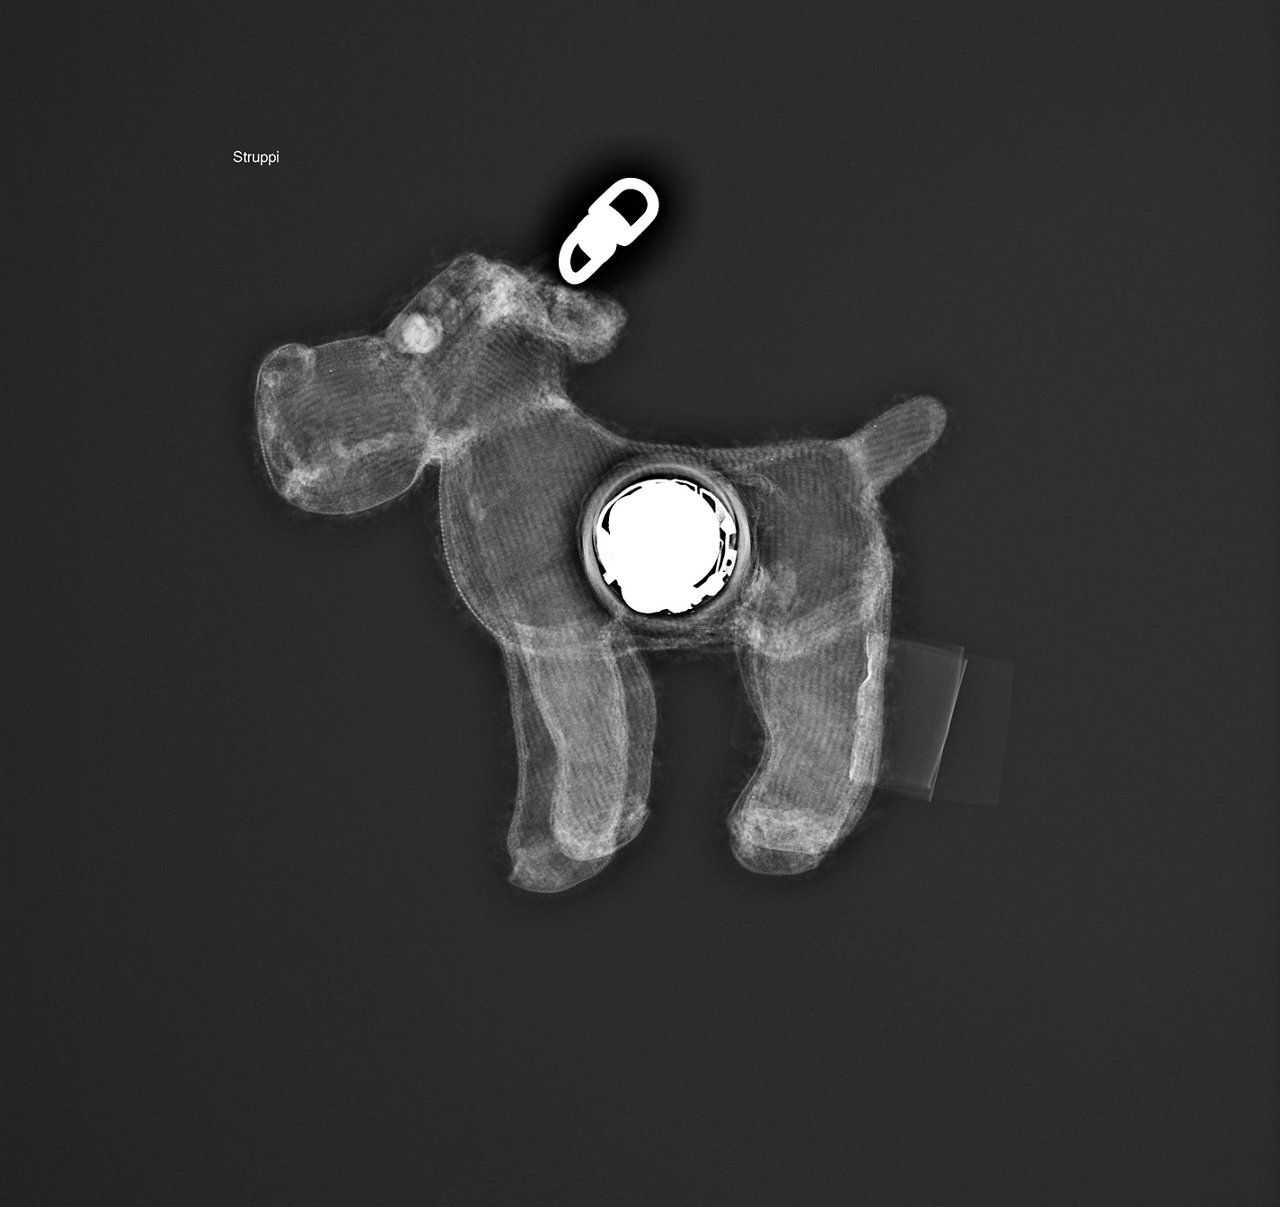 Röntgenbild eines Kuscheltieres